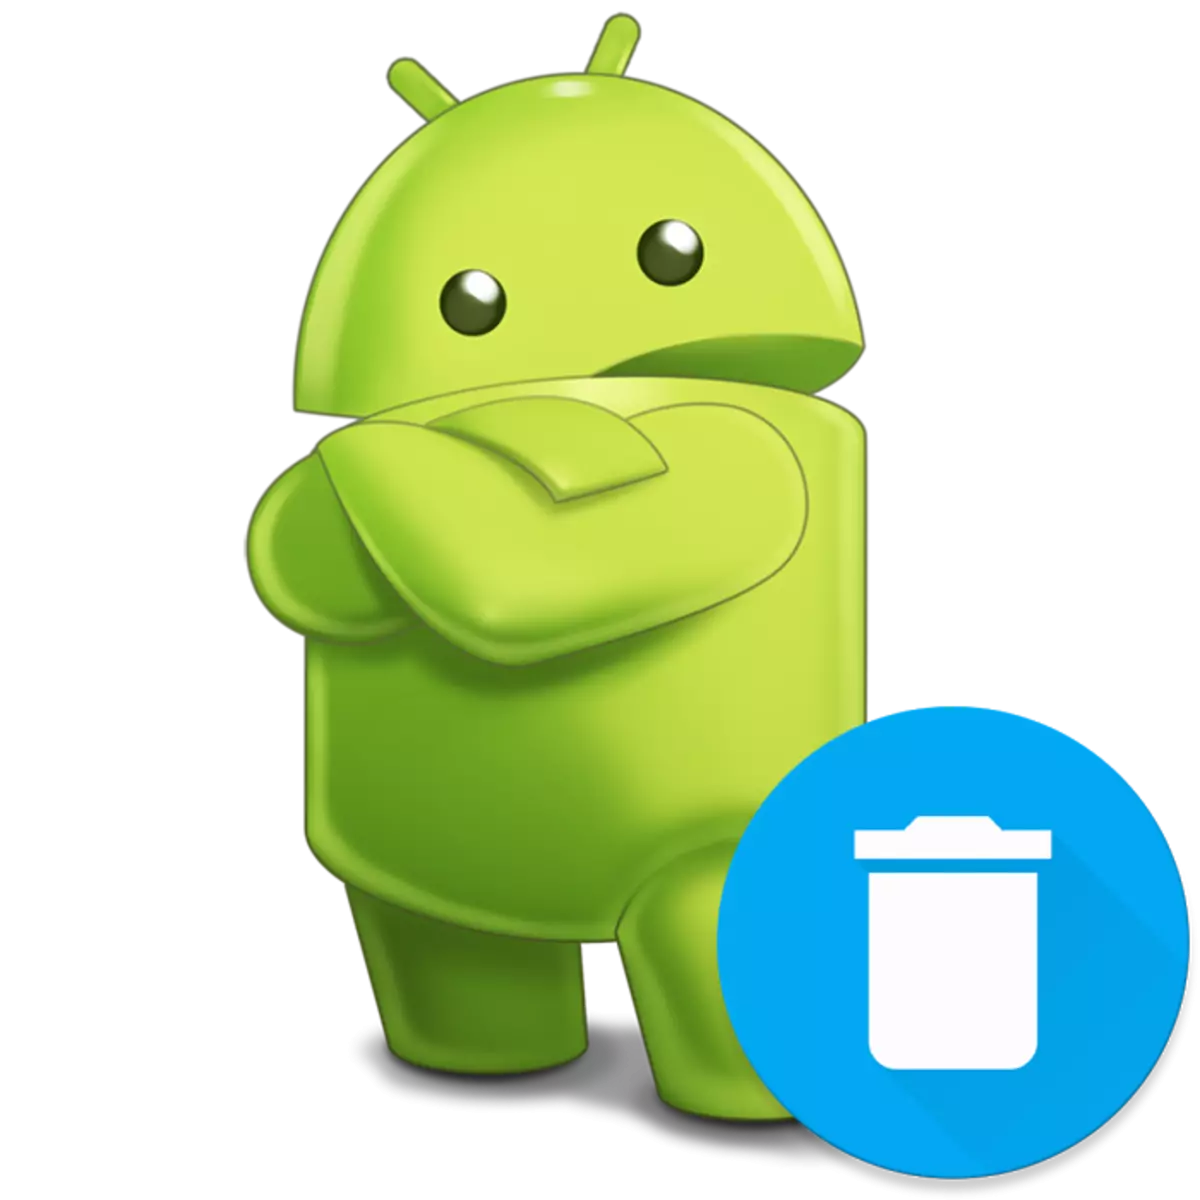 Nola kendu aplikazioa Android-en